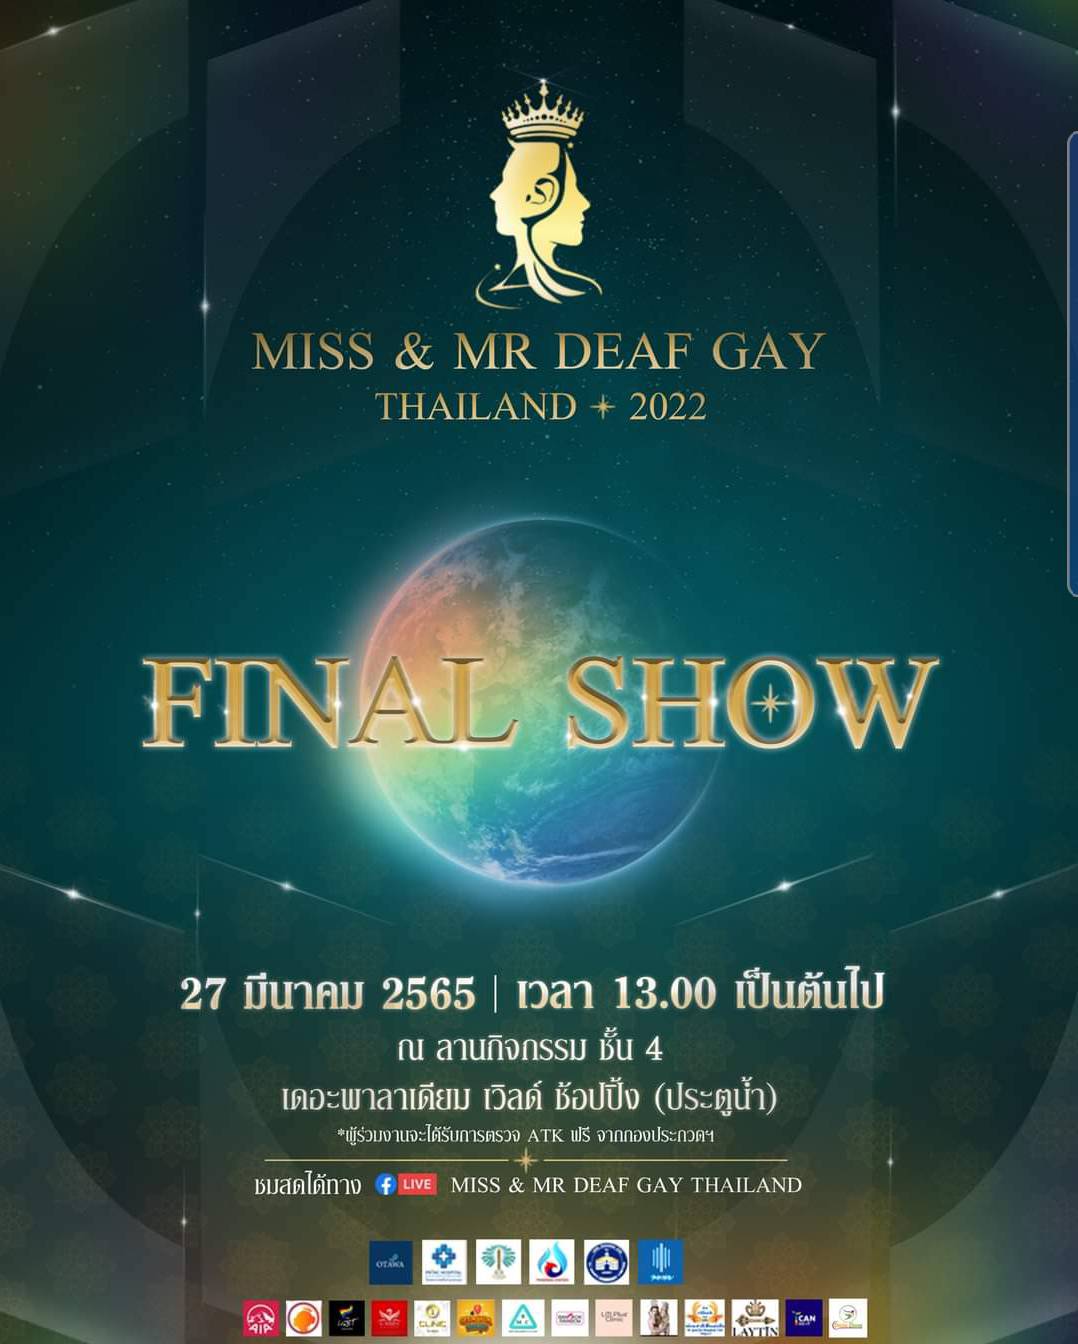 ข่าวอีเว้นท์ - MISS & MR DEAF GAY THAILAND 2022